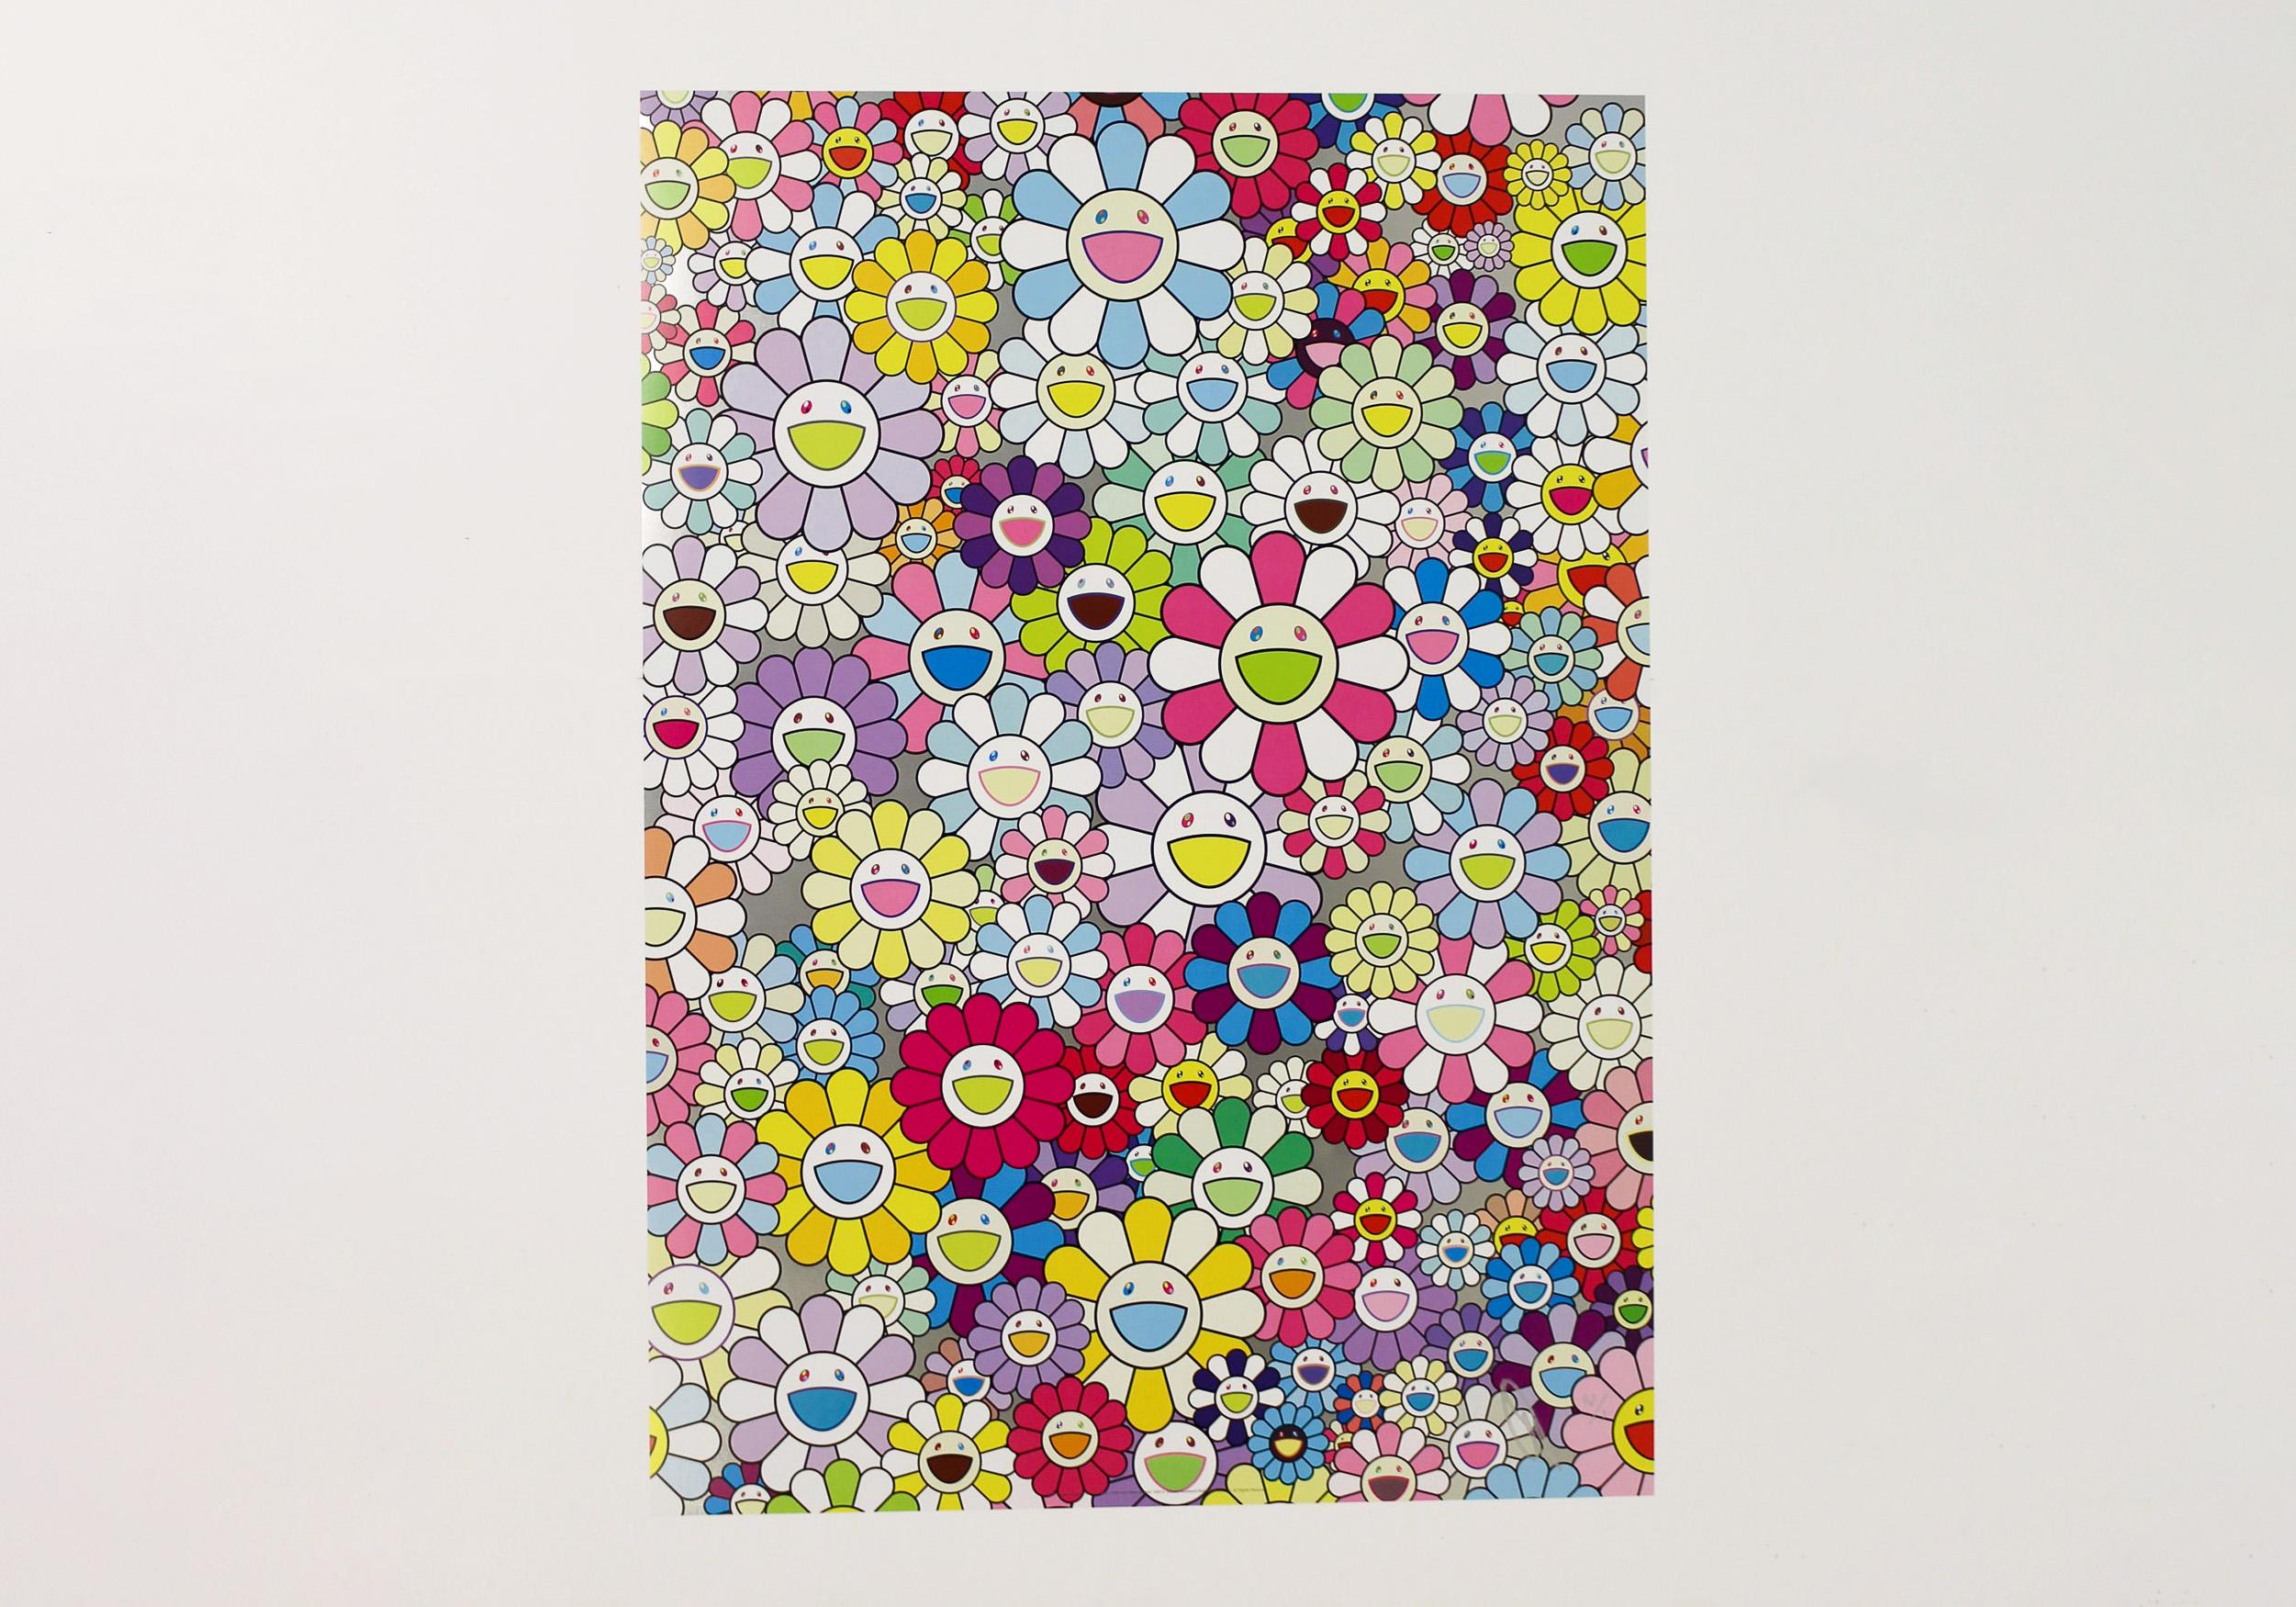 Takashi Murakami Print - Champagne Supernova: Multicolor + Pink and White Stripes